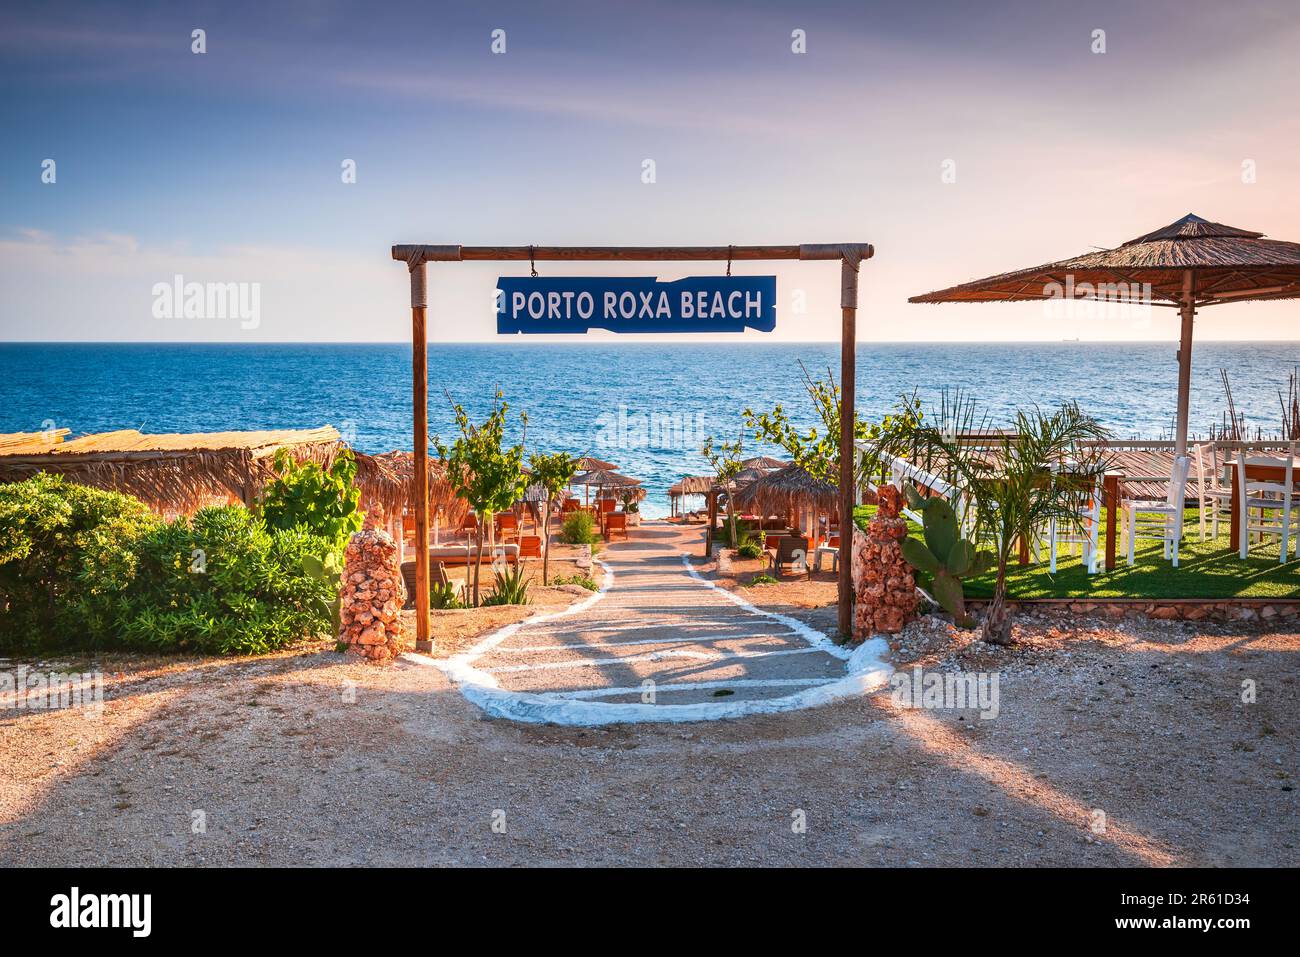 Zante, Grecia. Pittoresca spiaggia rocciosa di Porto Roxa situata sulla costa occidentale di Zante, Isole Greche. Foto Stock